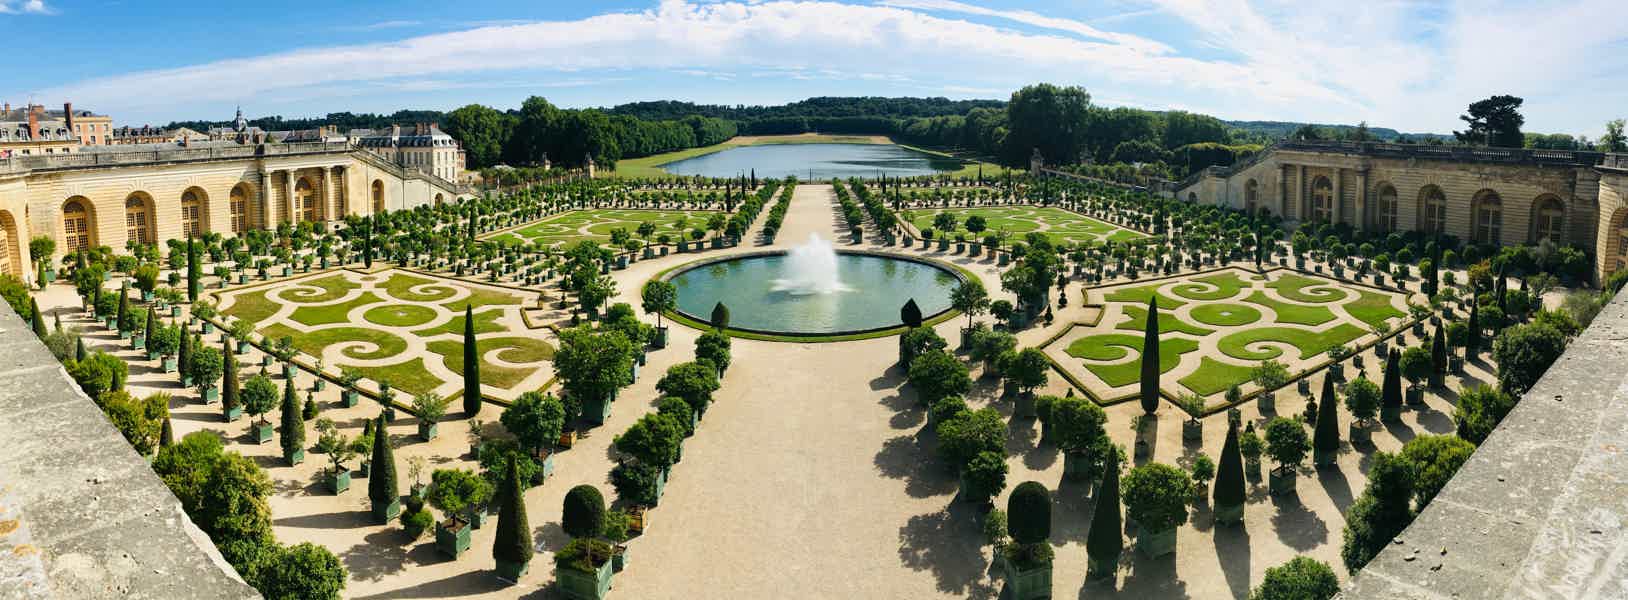 The Château de Versailles Audio Guided Tour from Paris - photo 6